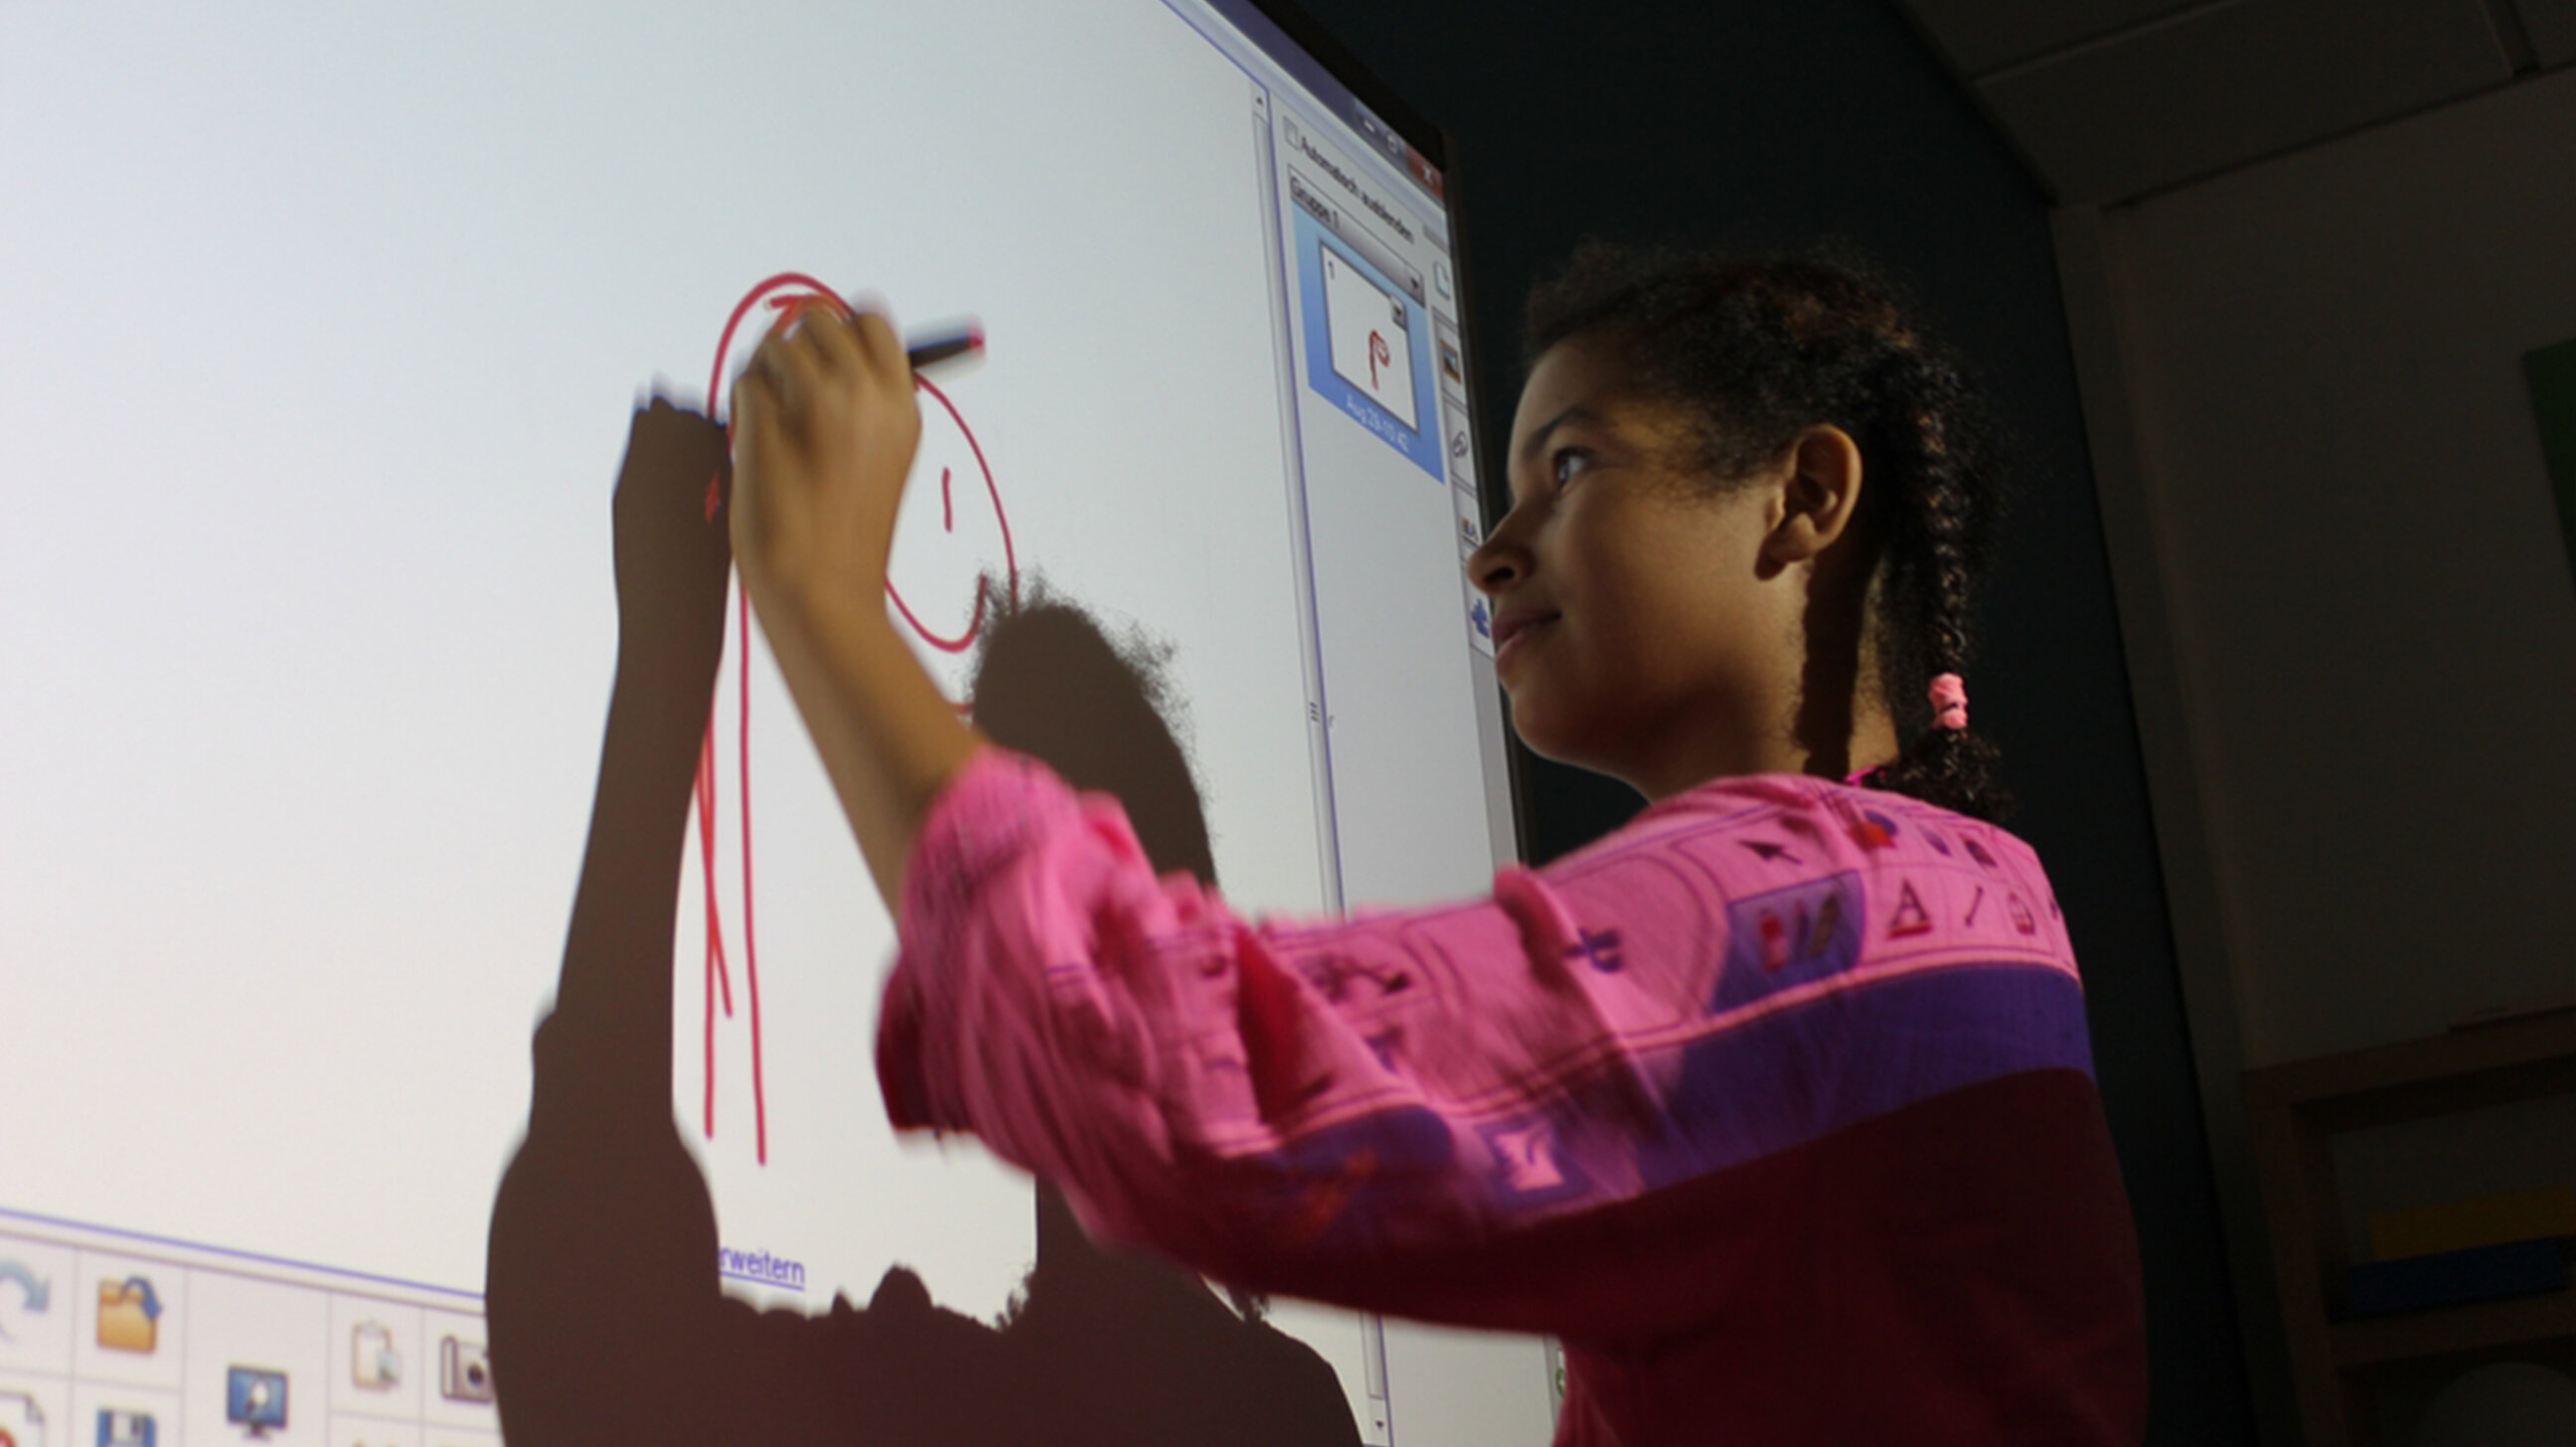 Mädchen malt ein Bild am Smartboard